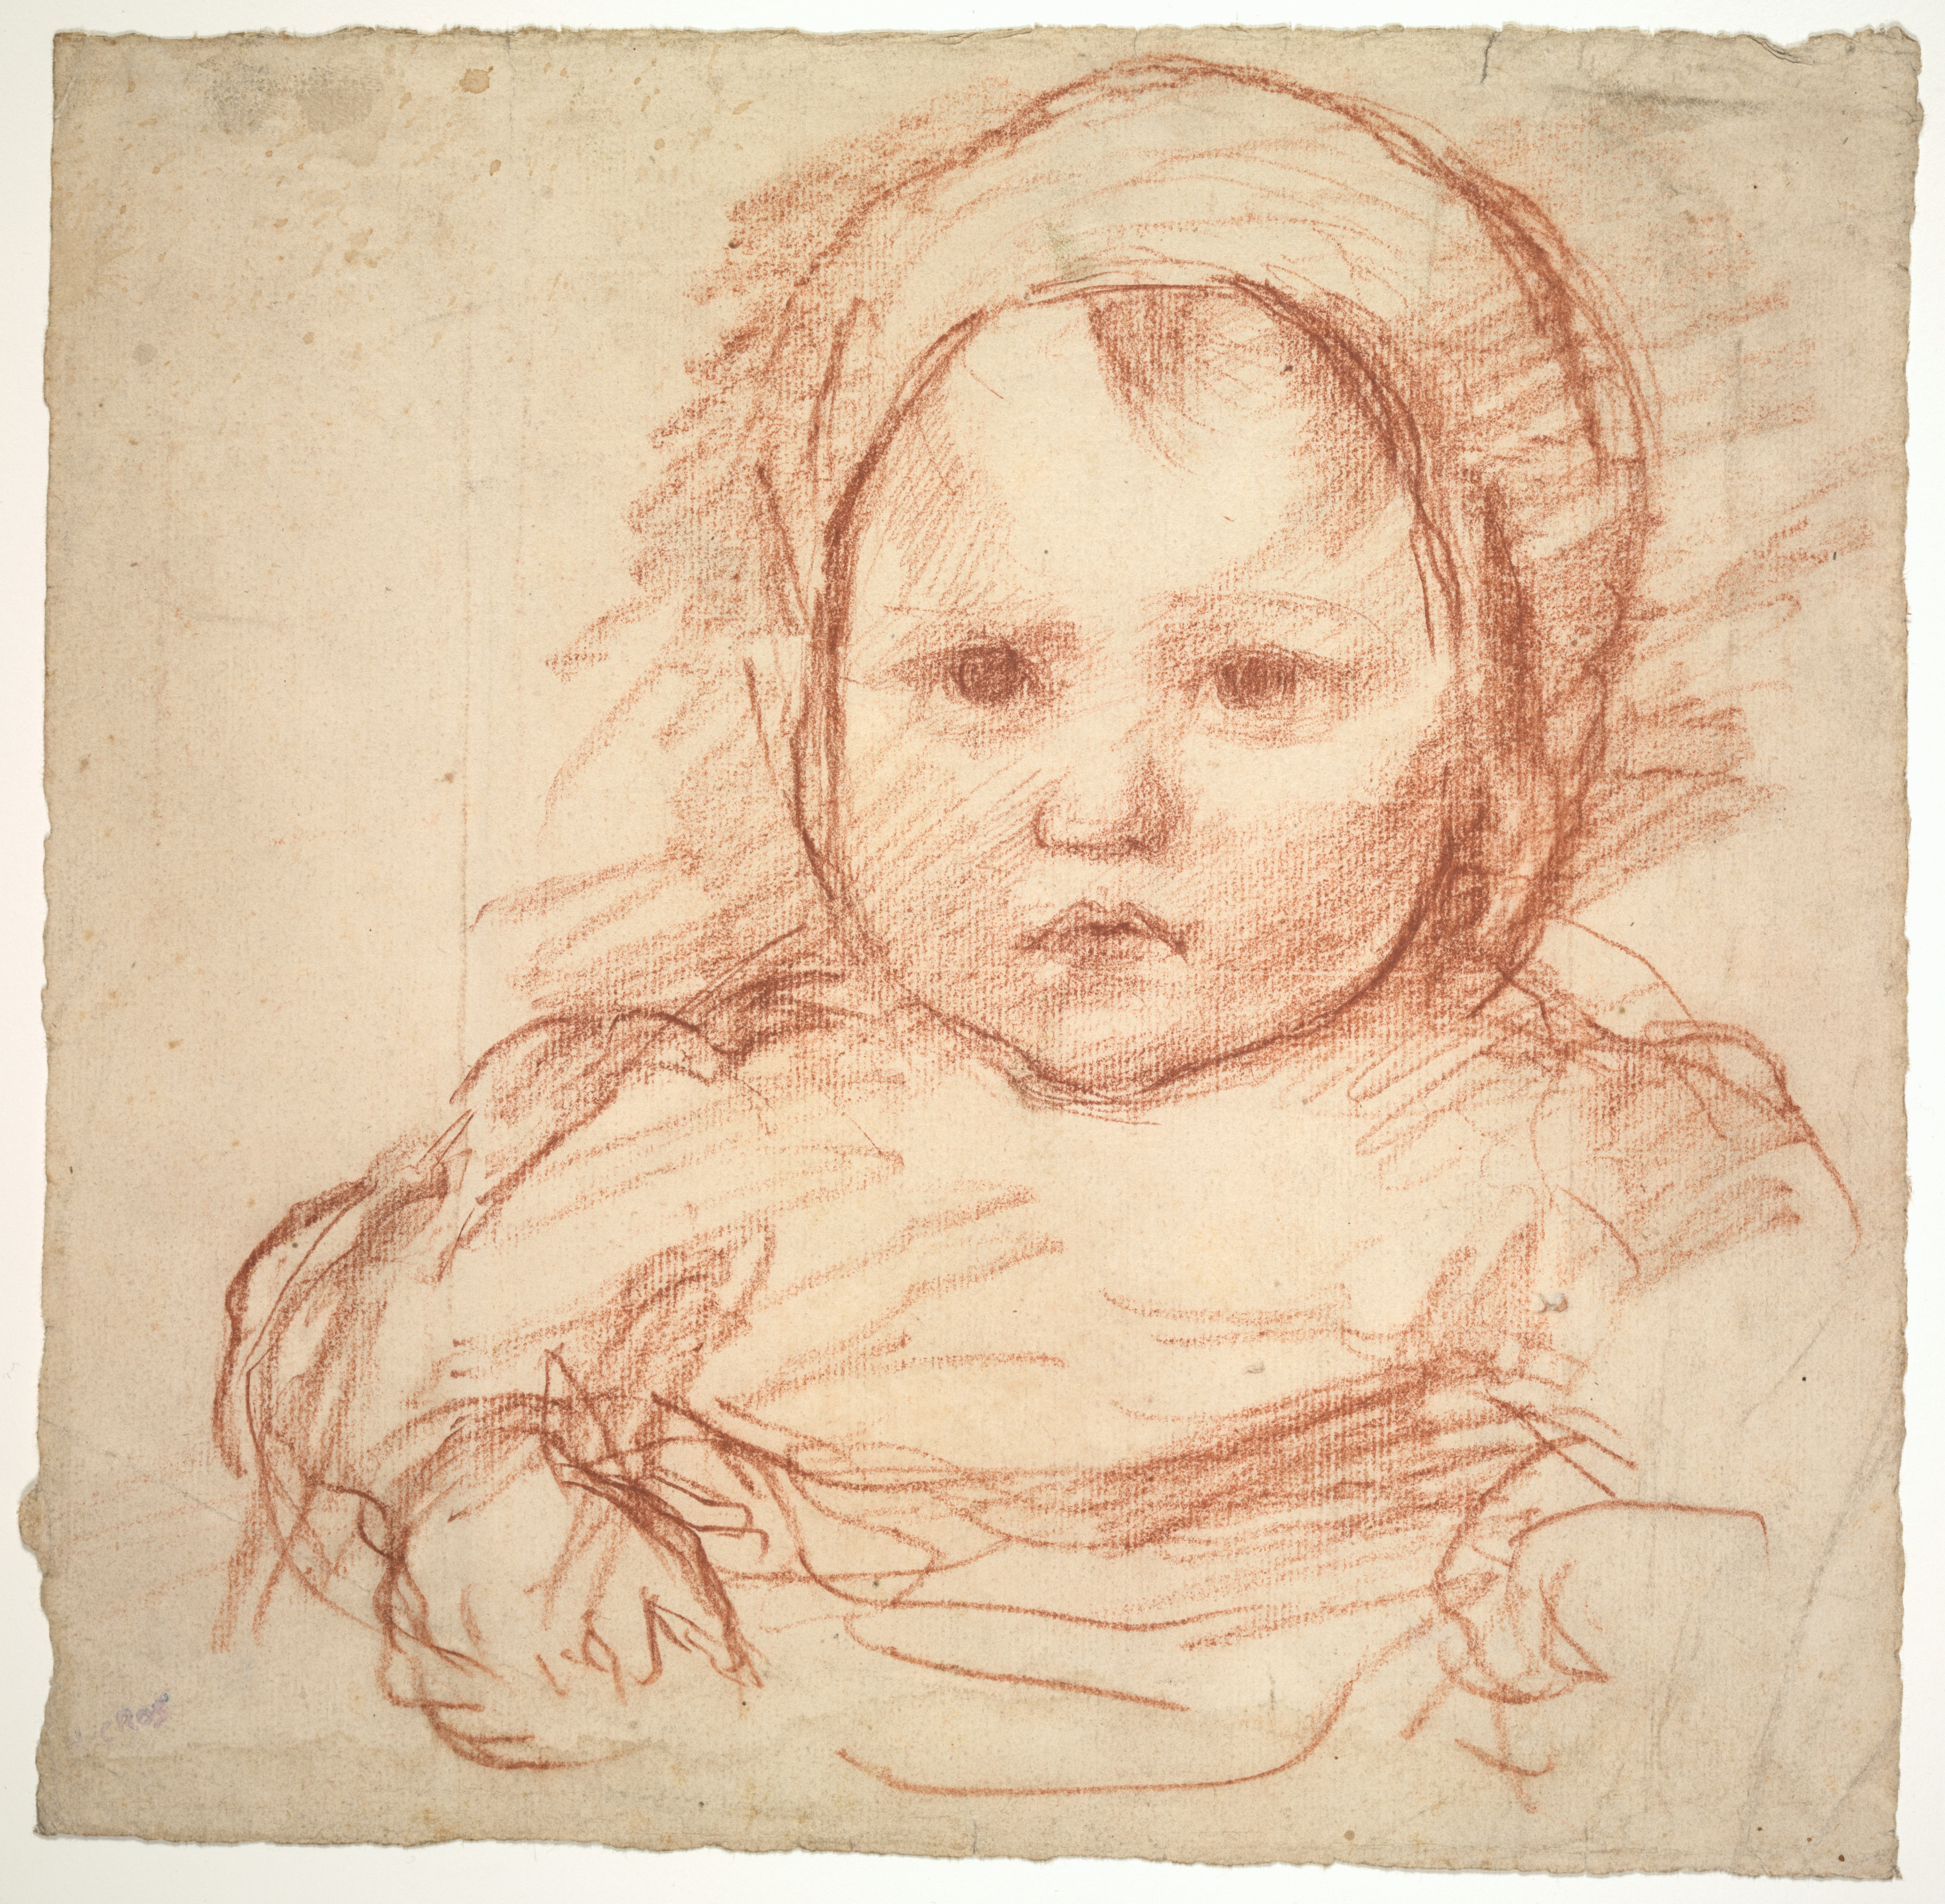 Portrait of an Infant